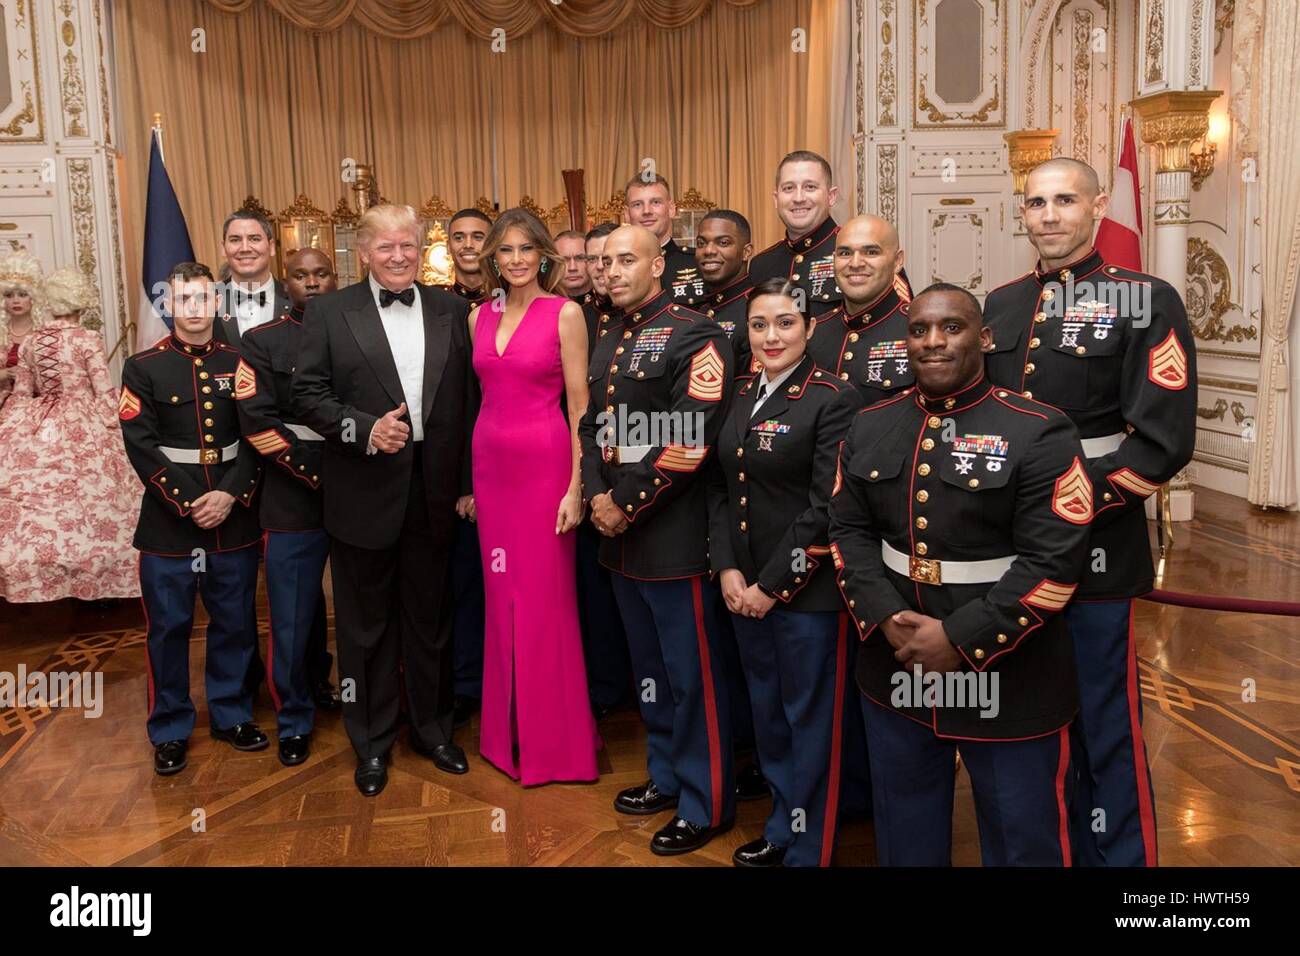 US-Präsident Donald Trump und First Lady Melania Trump posieren für ein Foto mit den Mitgliedern des Vereinigte Staaten Militärs vor dem Besuch einer privaten Veranstaltung im Mar-a-Lago Club 4. Februar 2017 in Palm Beach, Florida. Stockfoto